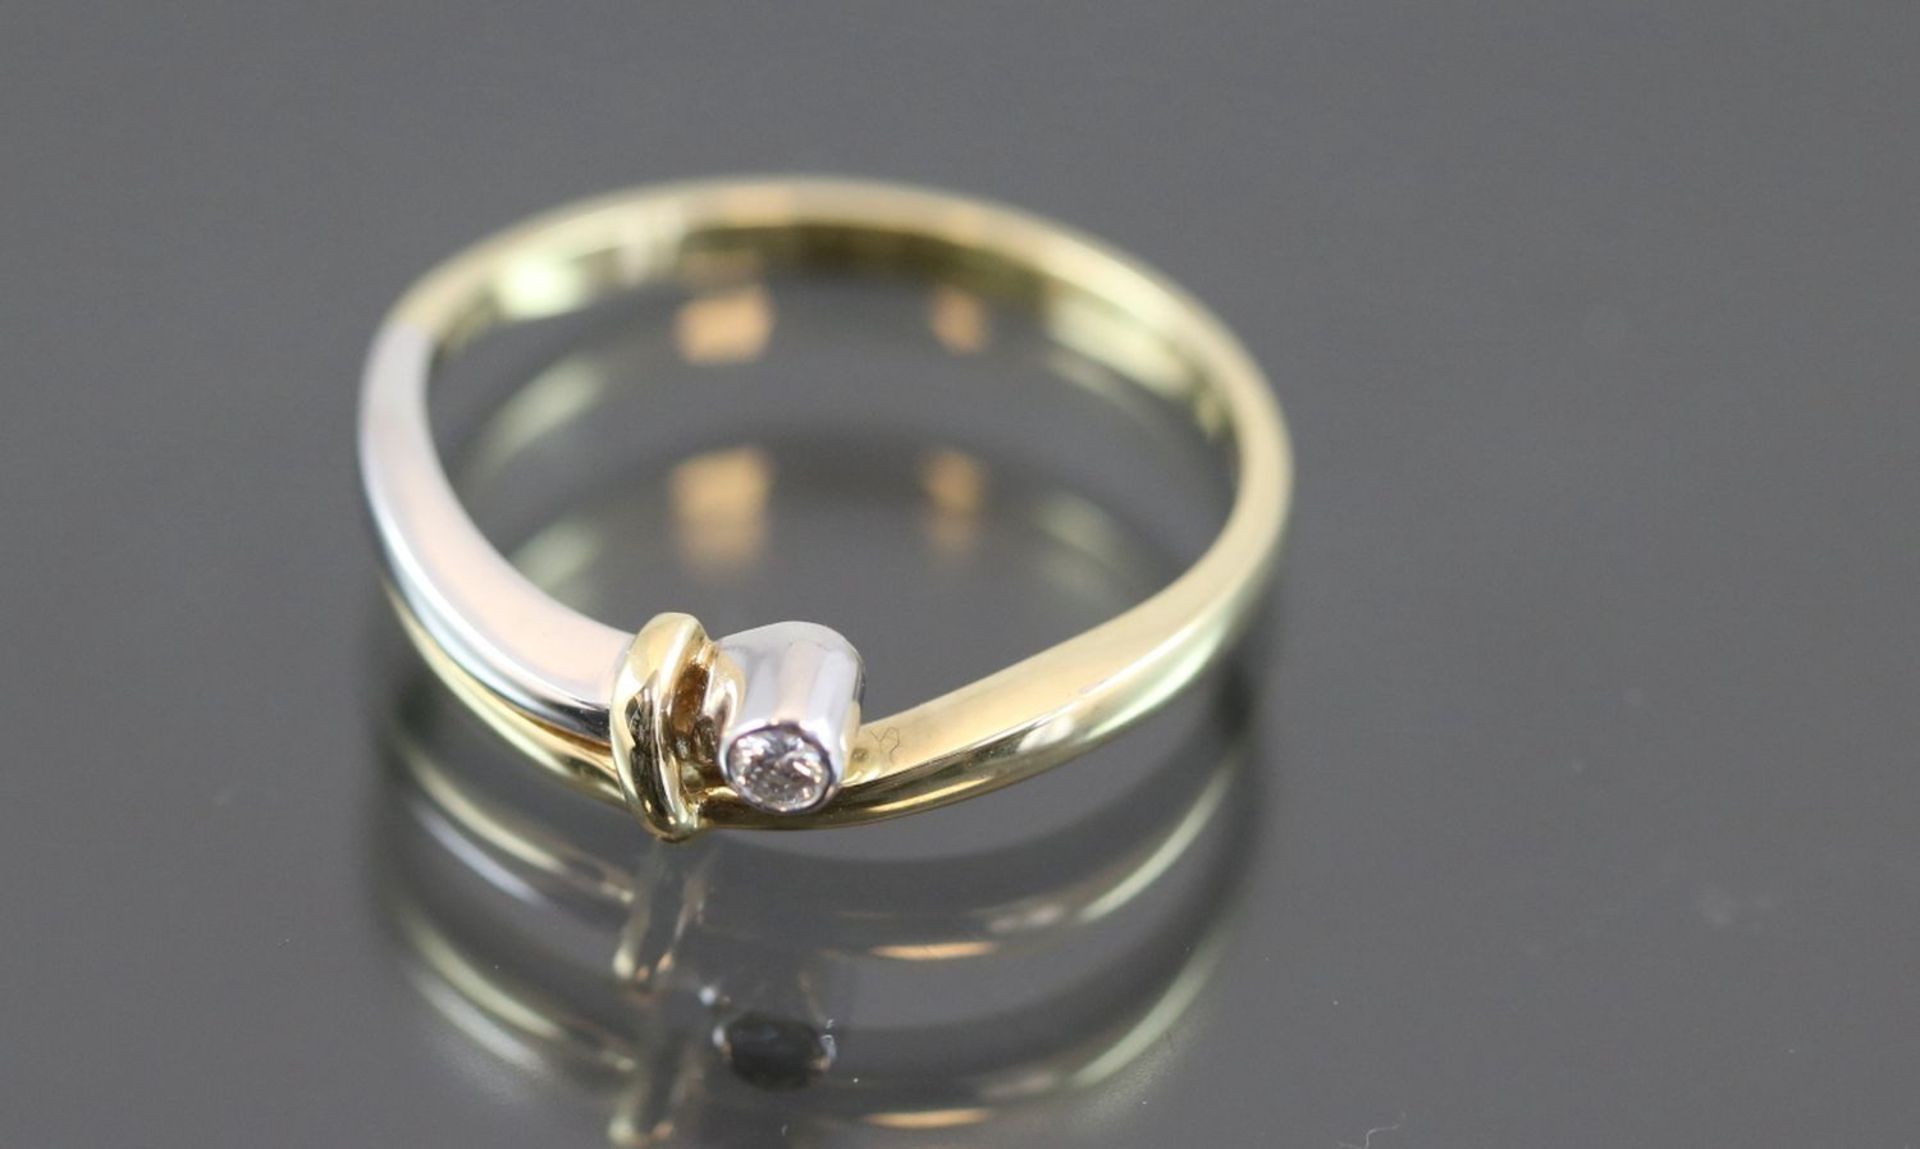 Brillant-Ring, 585 Gelbgold2,4 Gramm 1 Brillant, 0,04 ct., w/si. Ringgröße: 56Zustand: Neu-